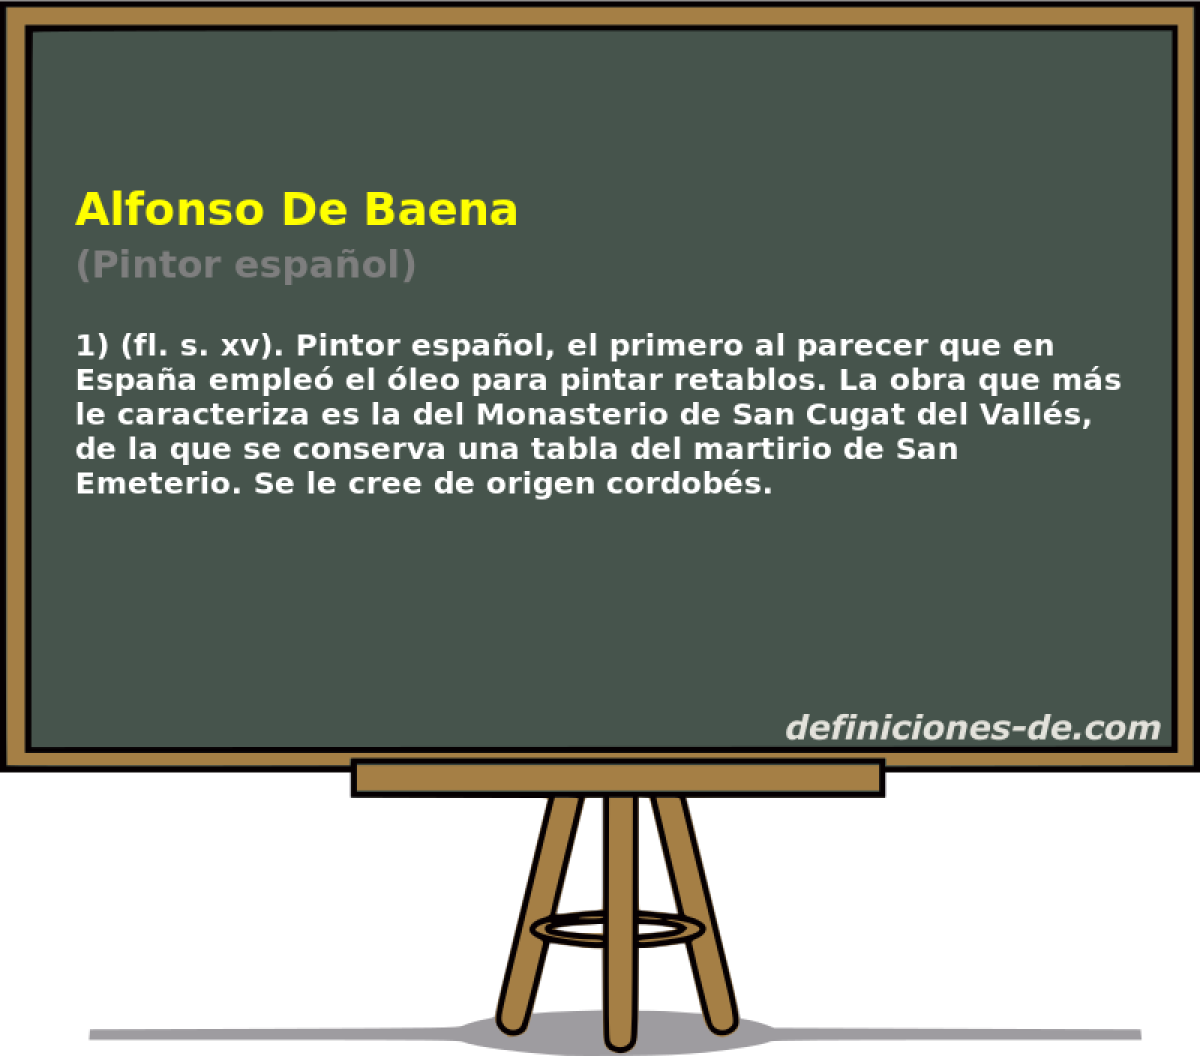 Alfonso De Baena (Pintor espaol)